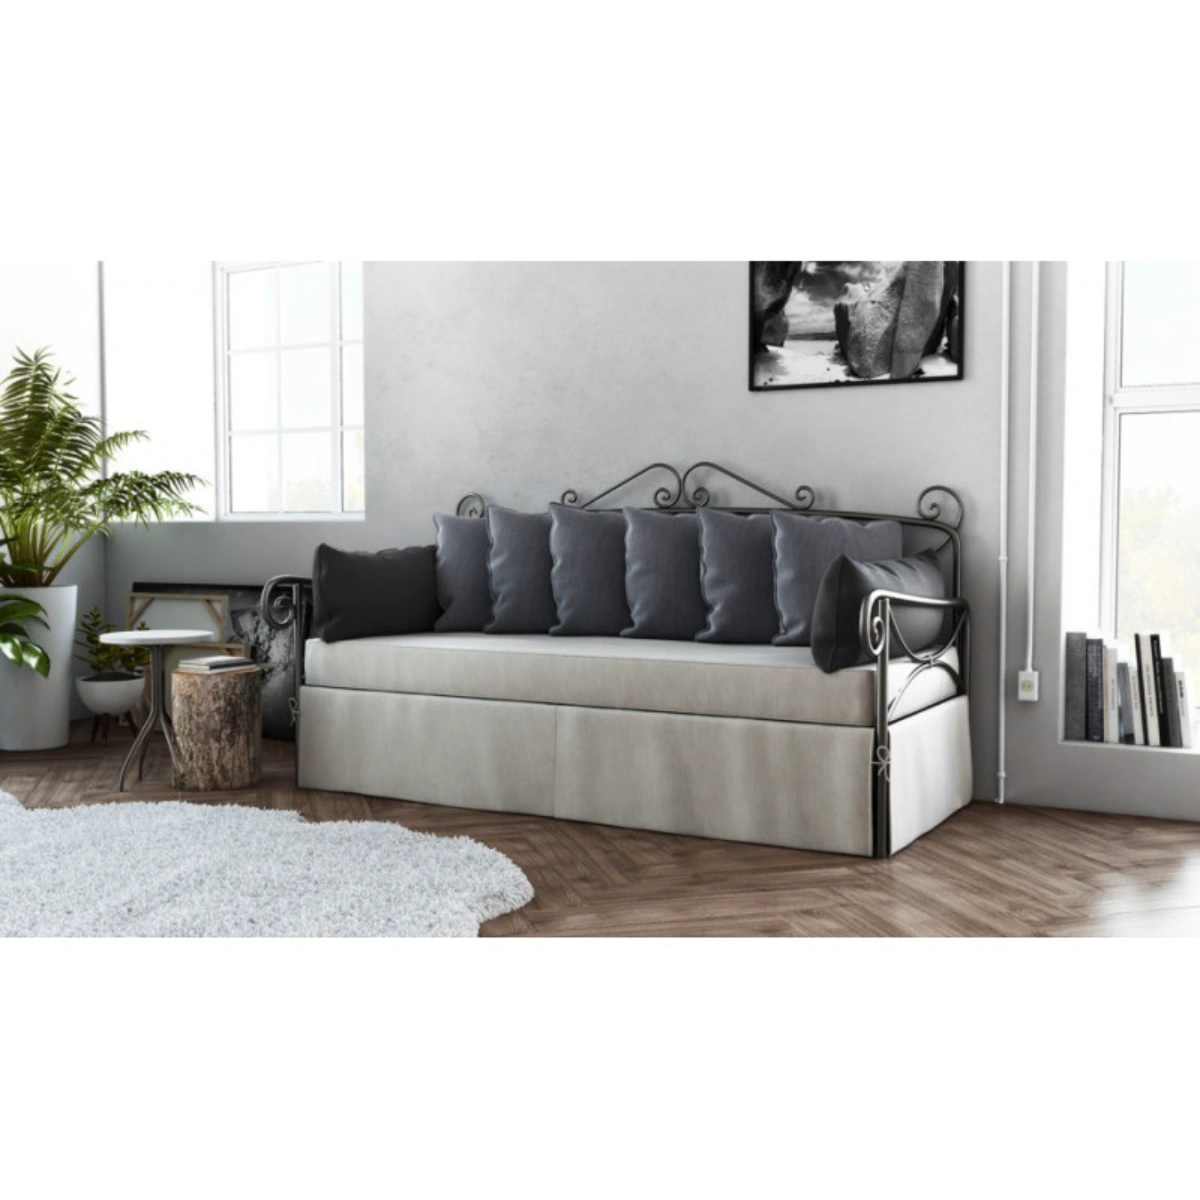 Μεταλλικός Καναπές - Κρεβάτι Firenze Διθέσιος 91x137 με στρώματα - Chic Strom - Ελληνικής Κατασκευής